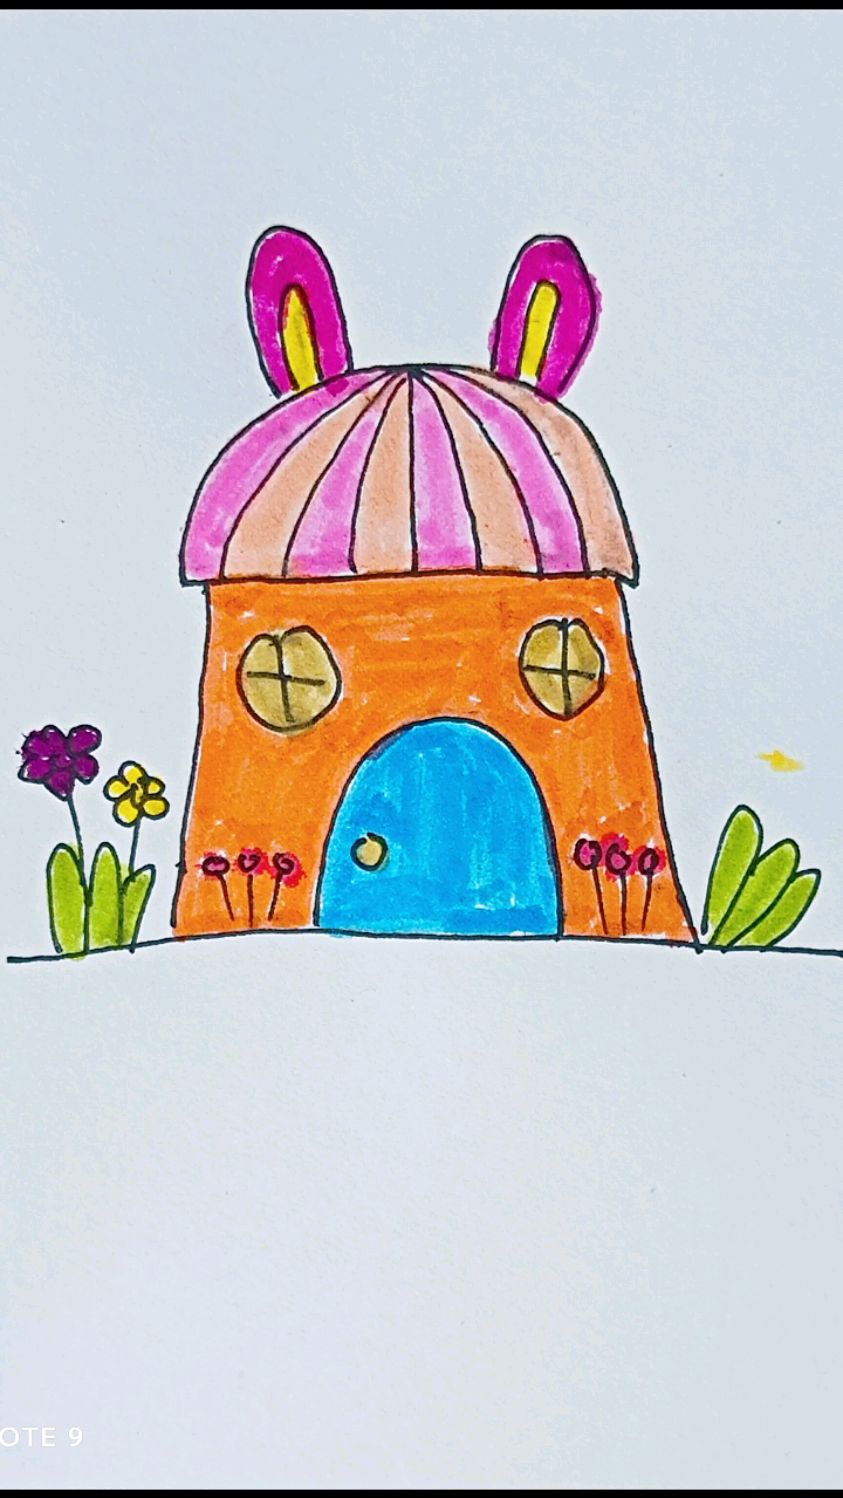 小白兔的房子简笔画图片